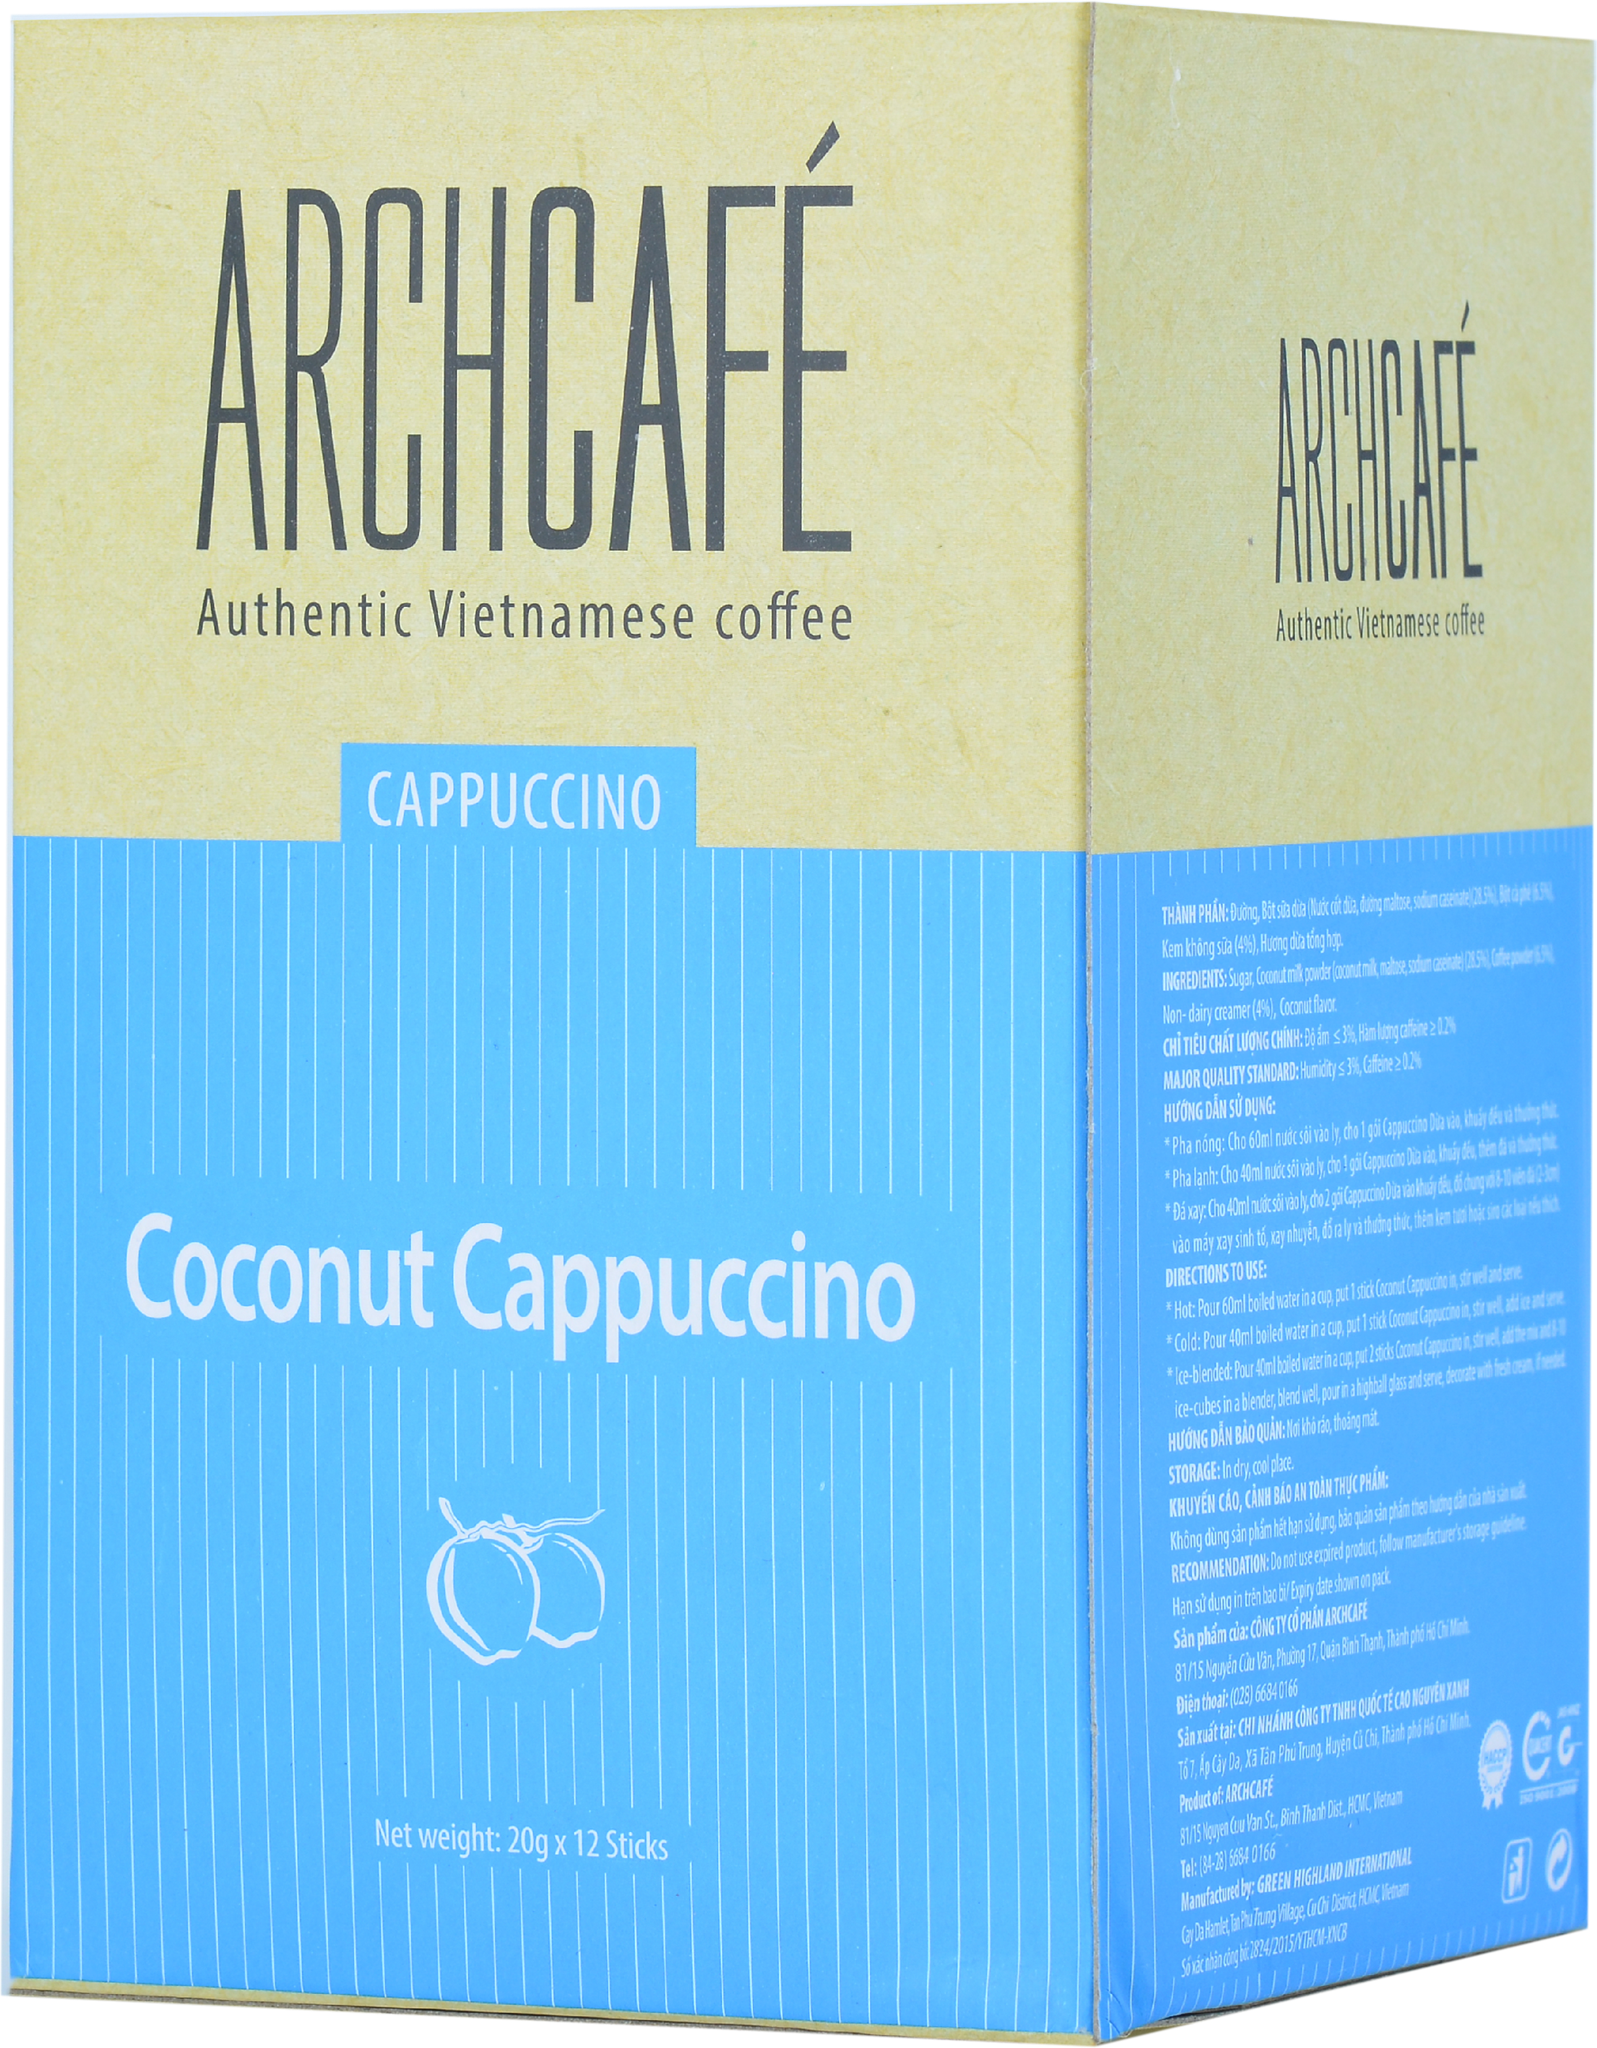 Coconut Cappuccino NesCafé Coffee Drink, Box of 200g - Hien Thao Shop